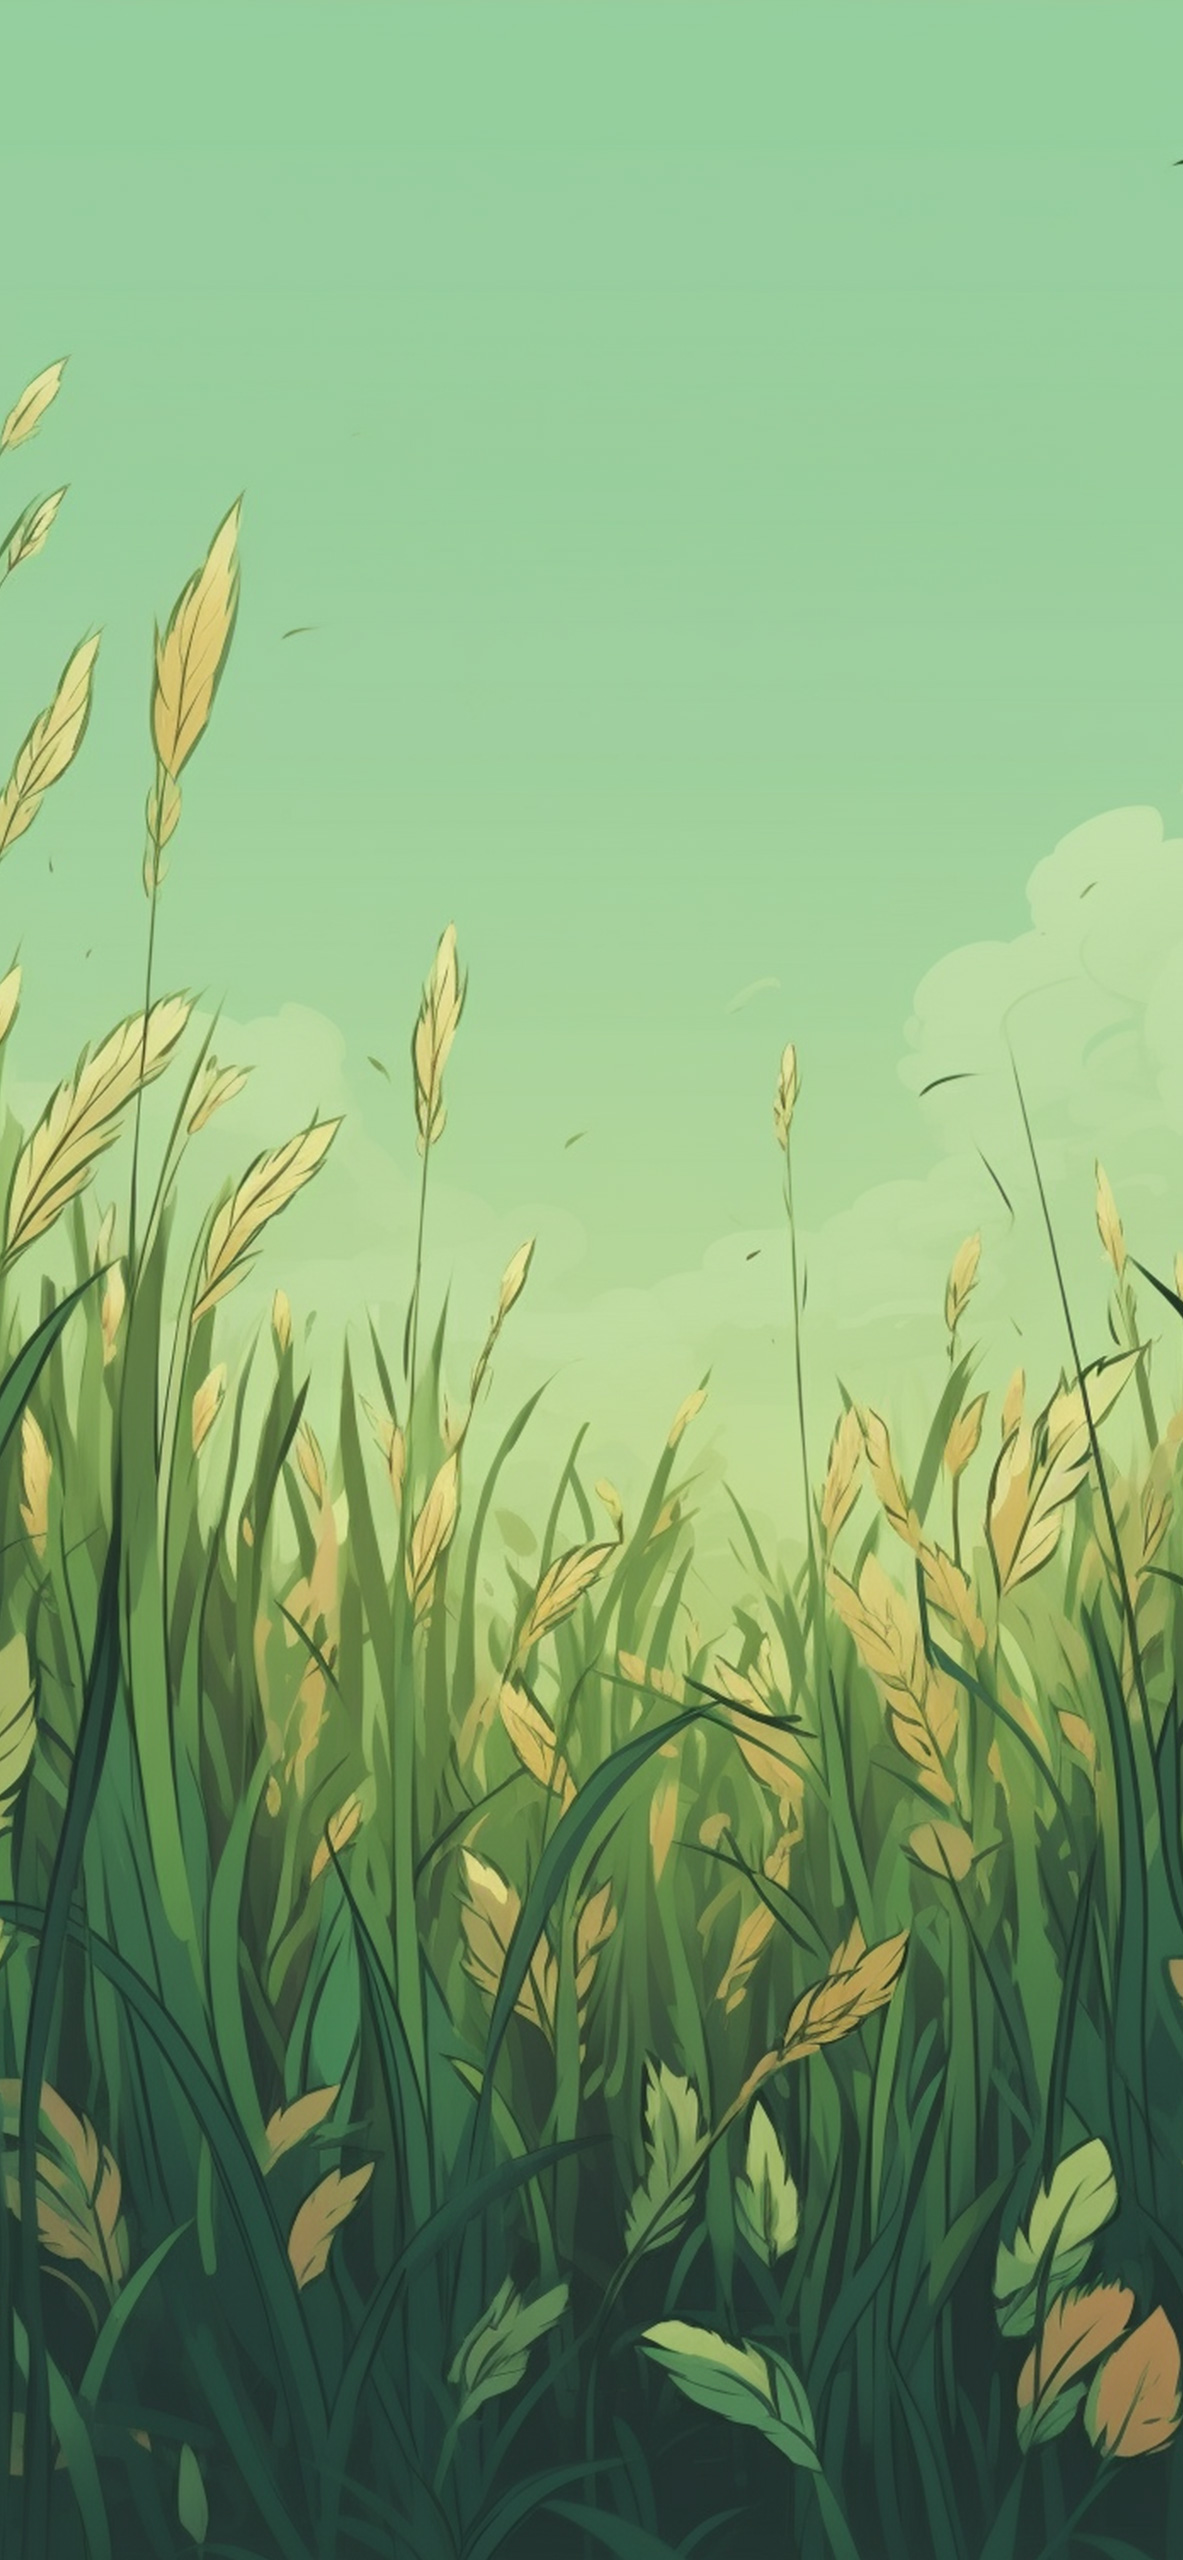 Green Grass & Sky Wallpaper Green Grass Wallpaper for iPhone